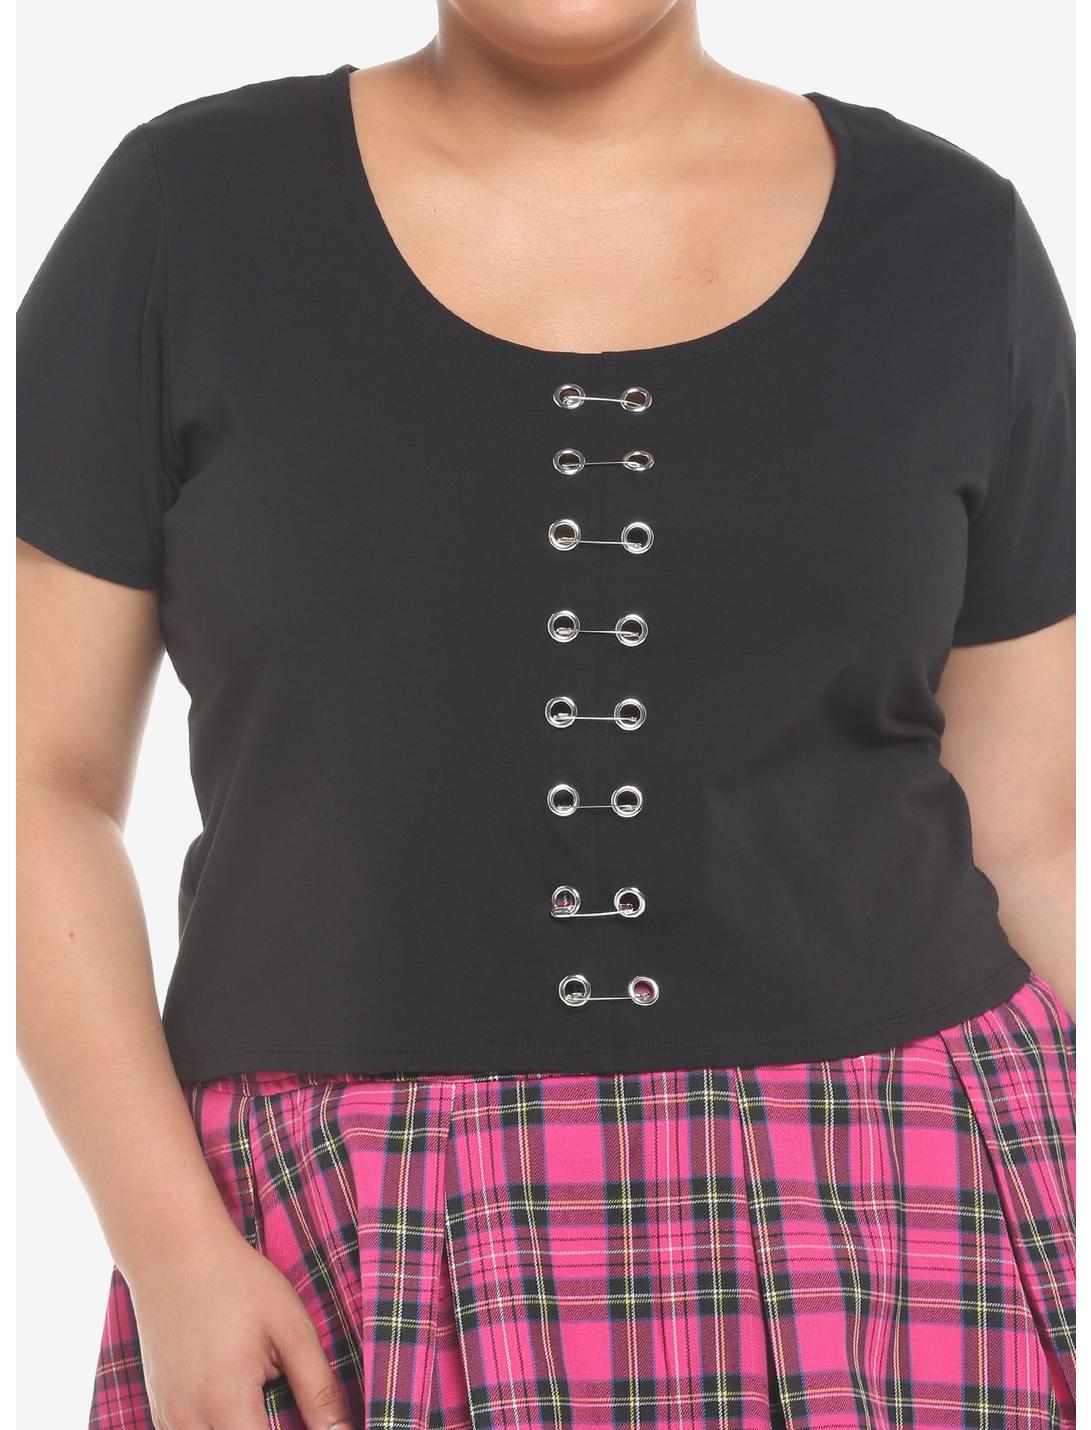 Black Safety Pin Girls Crop T-Shirt Plus Size, BLACK, hi-res